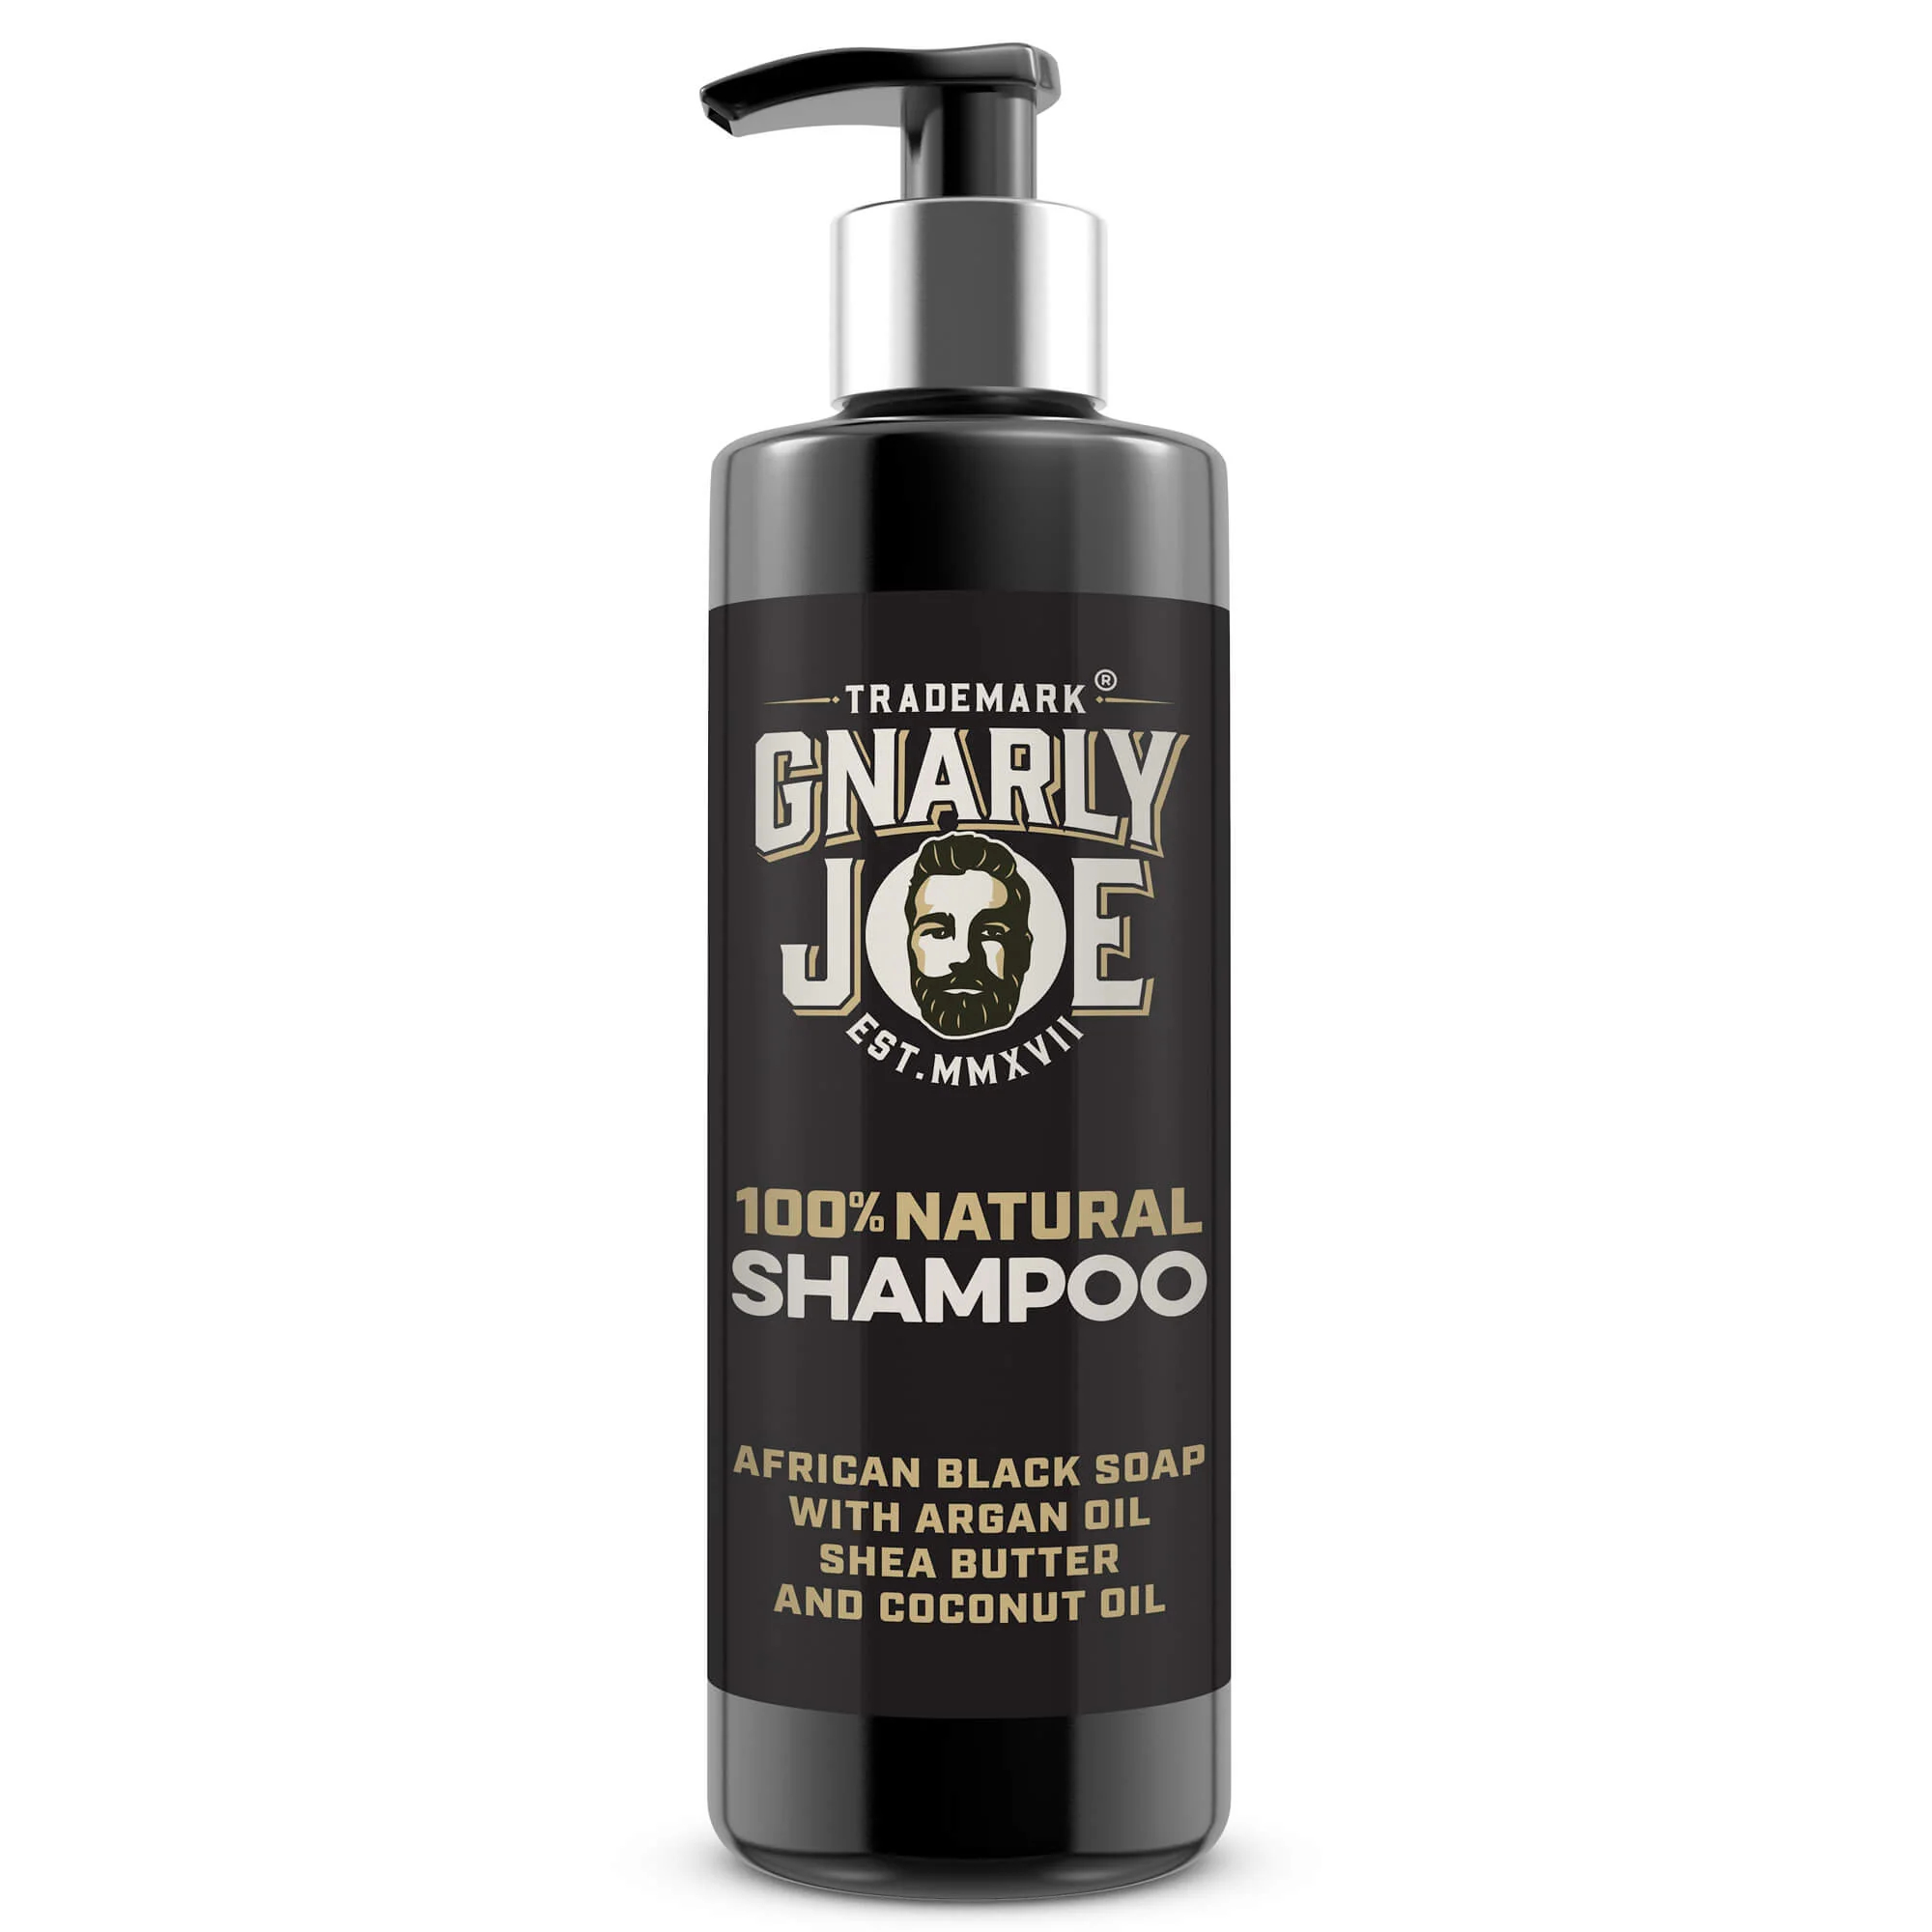 Gnarly Joe shampoo